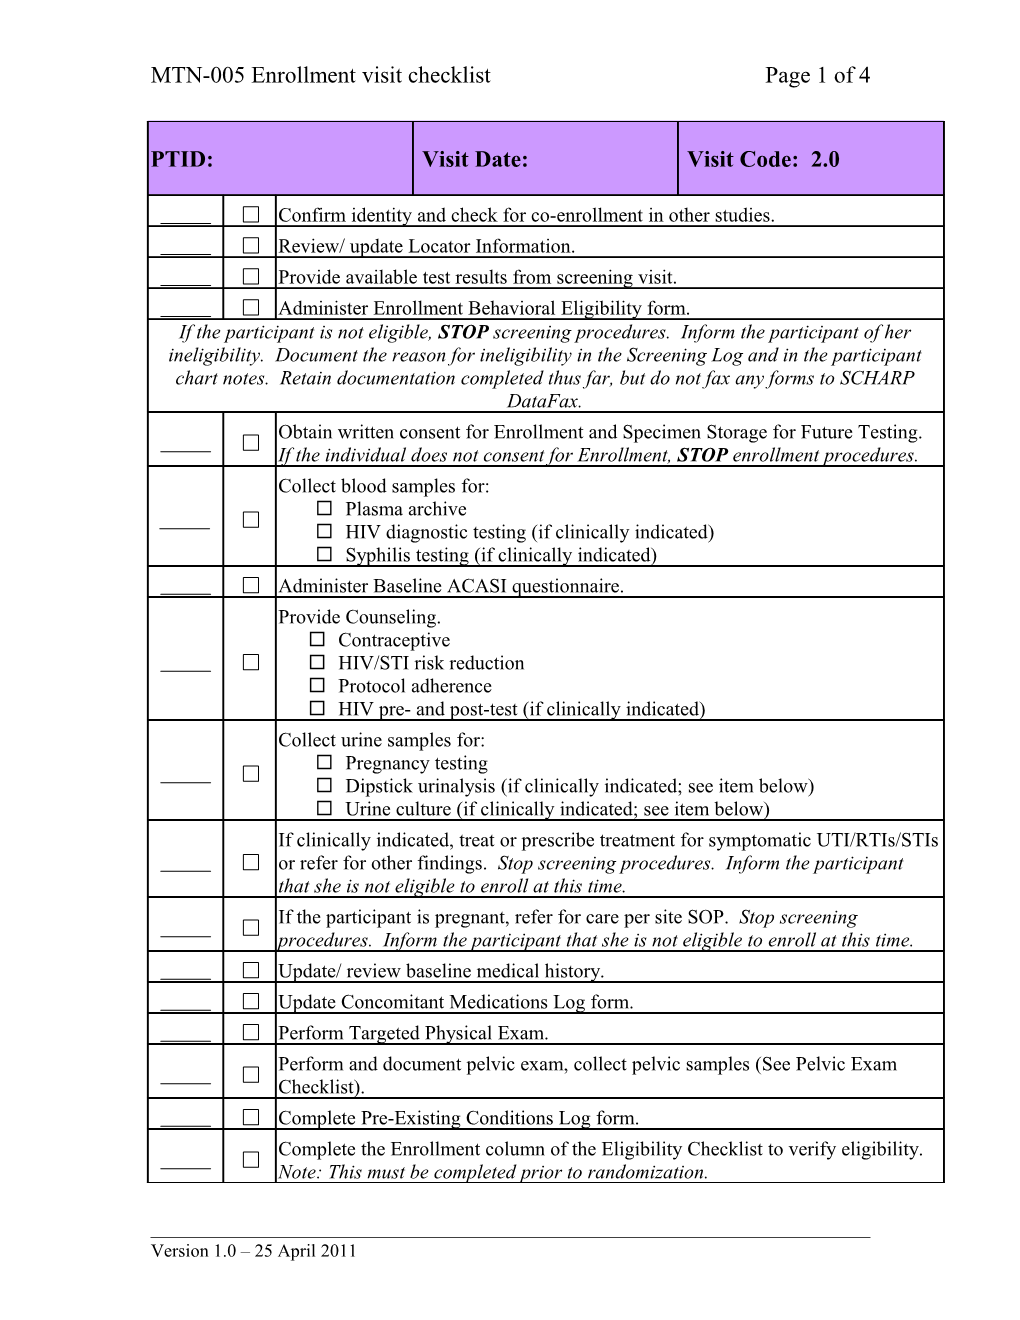 MTN-005 Enrollment Visit Checklistpage 1 of 4